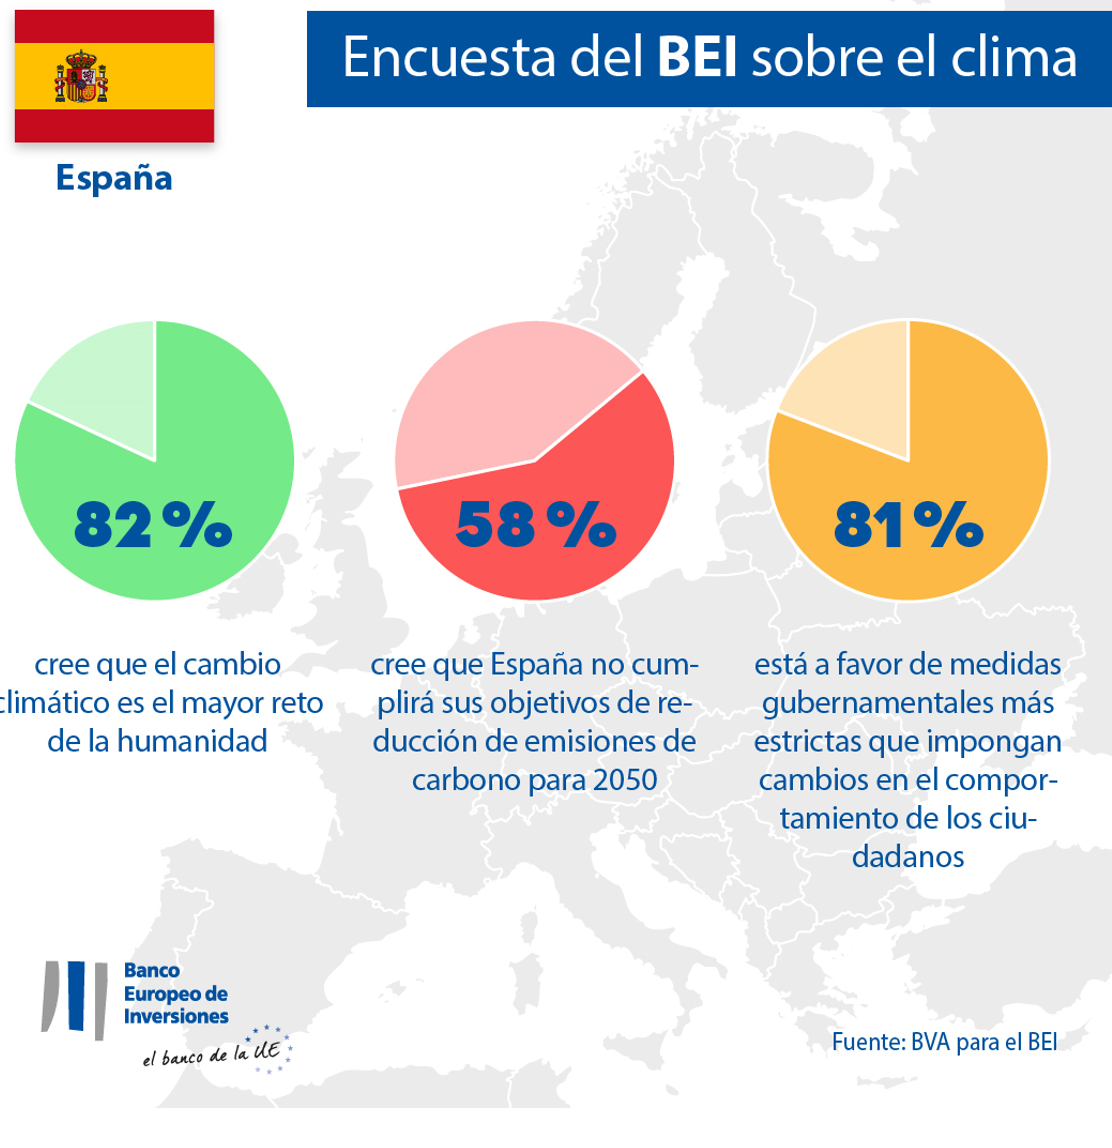 Encuesta del BEI sobre el clima